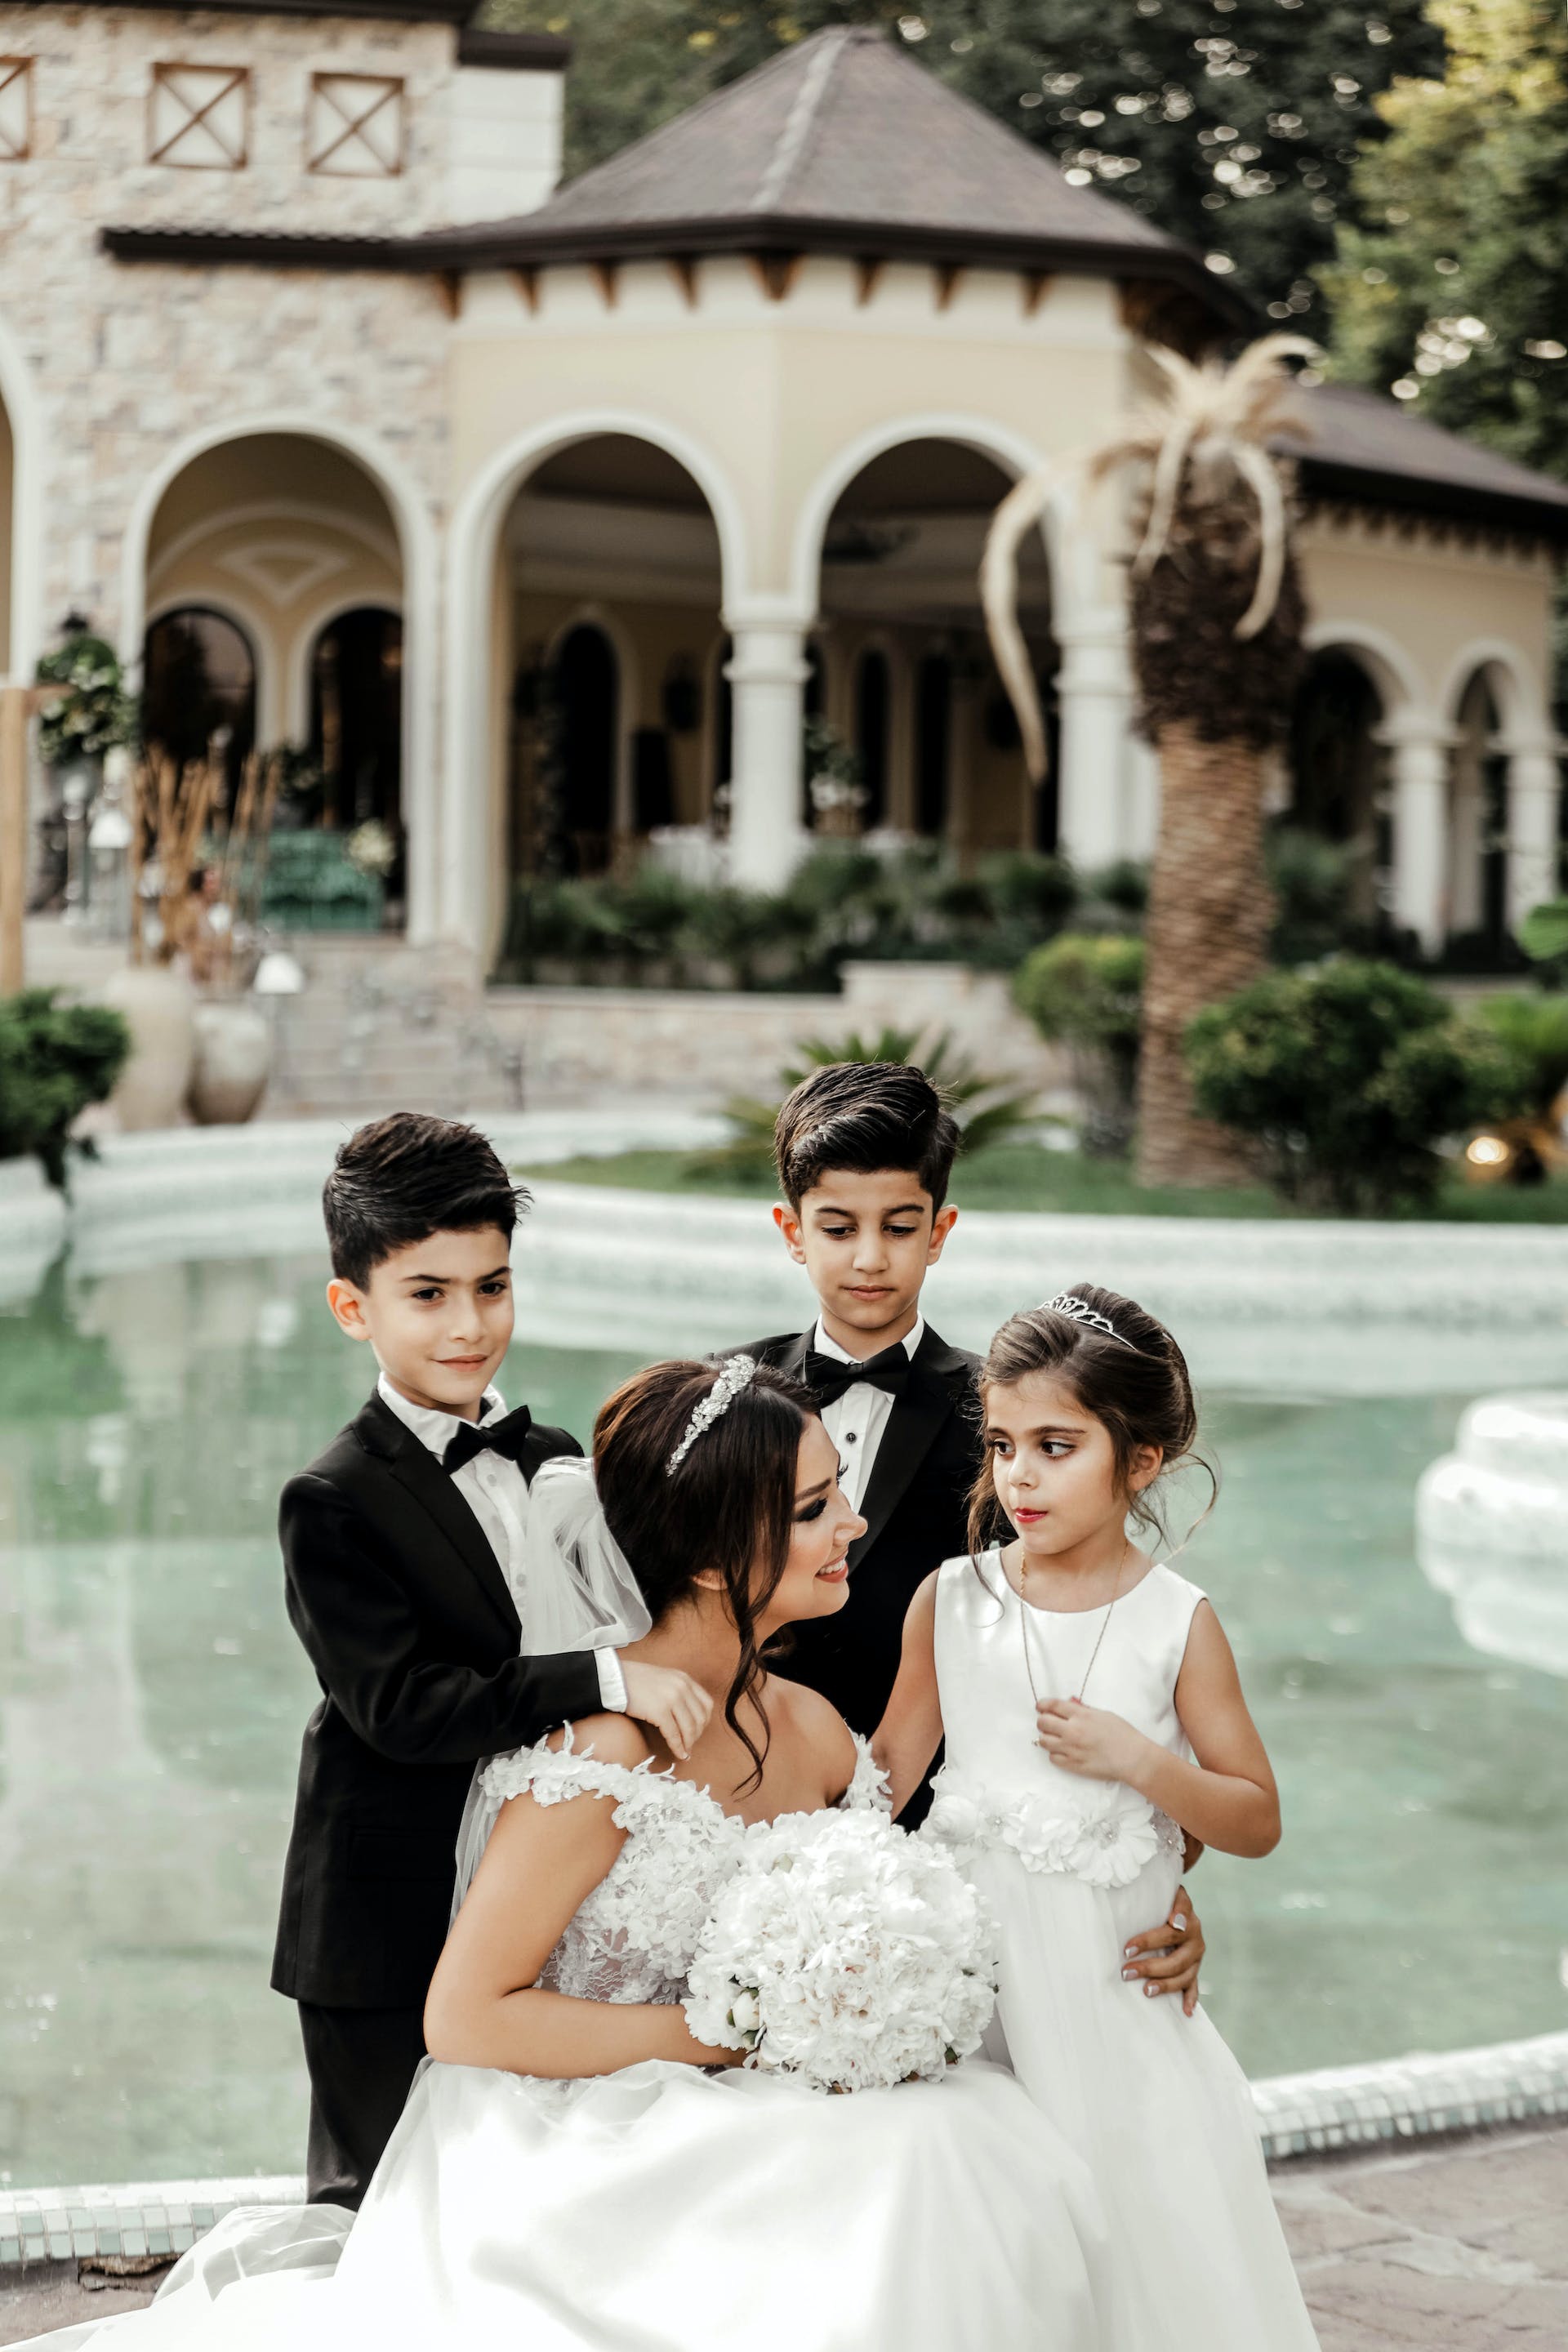 Tres niños alrededor de una novia | Fuente: Pexels